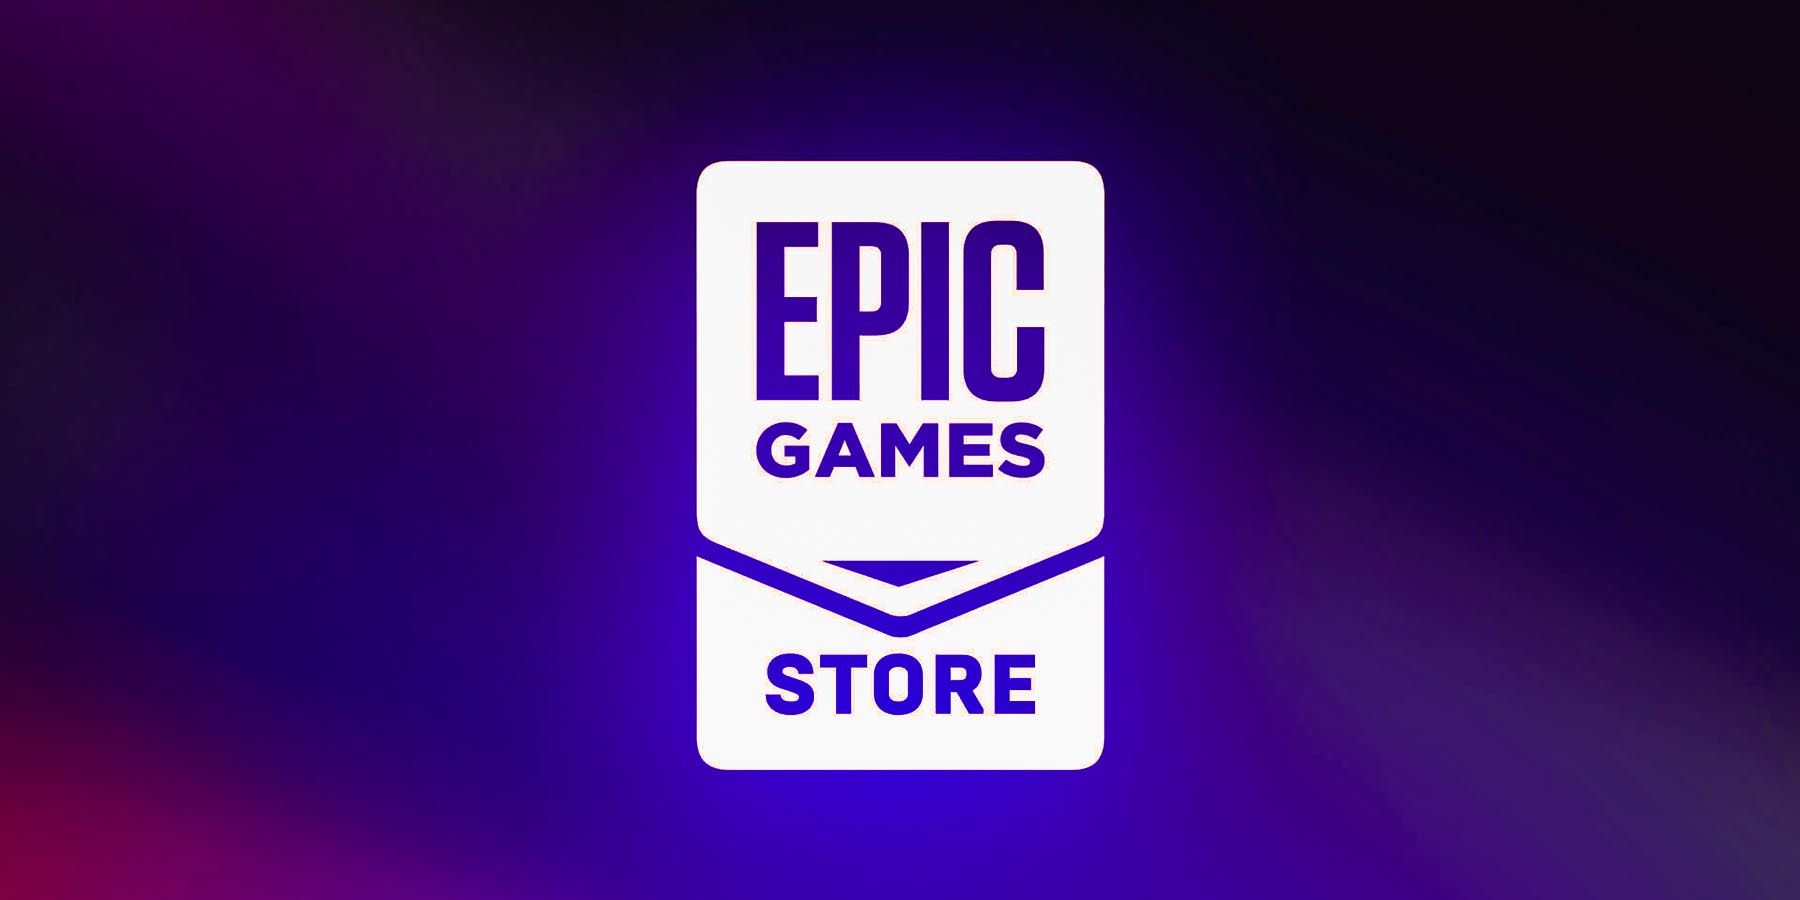 Tienda de juegos épicos dos juegos gratis para el 23 de junio explicados